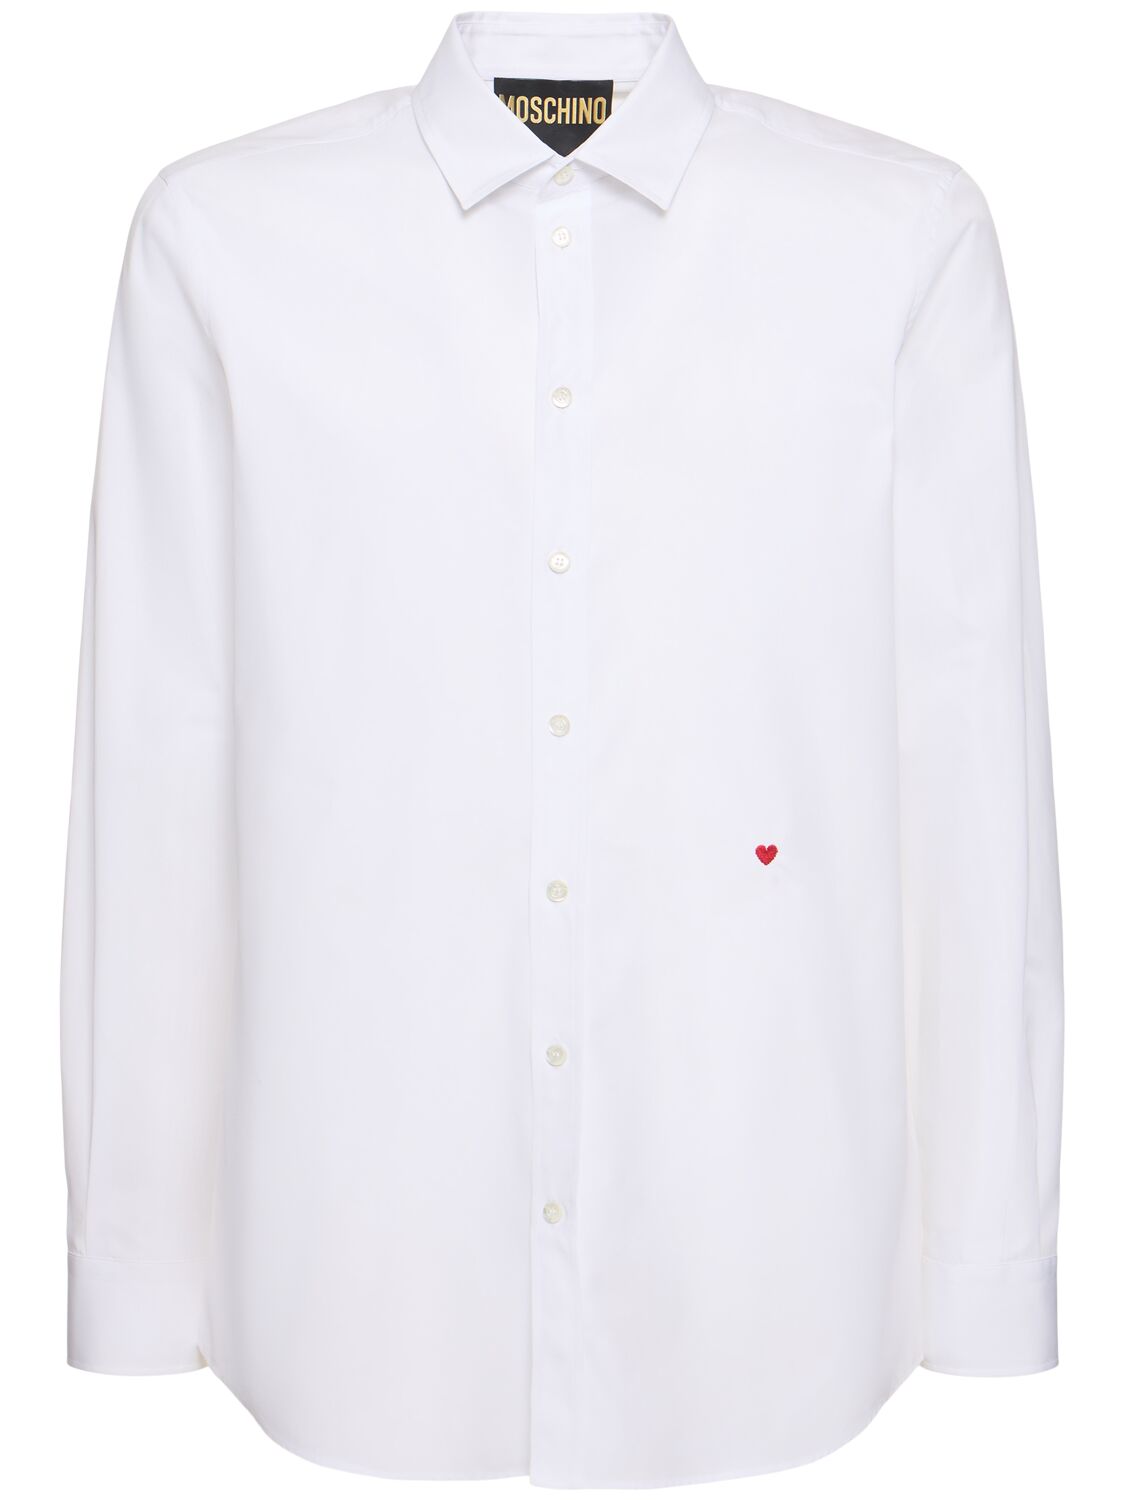 Moschino 心形刺绣衬衫 In White